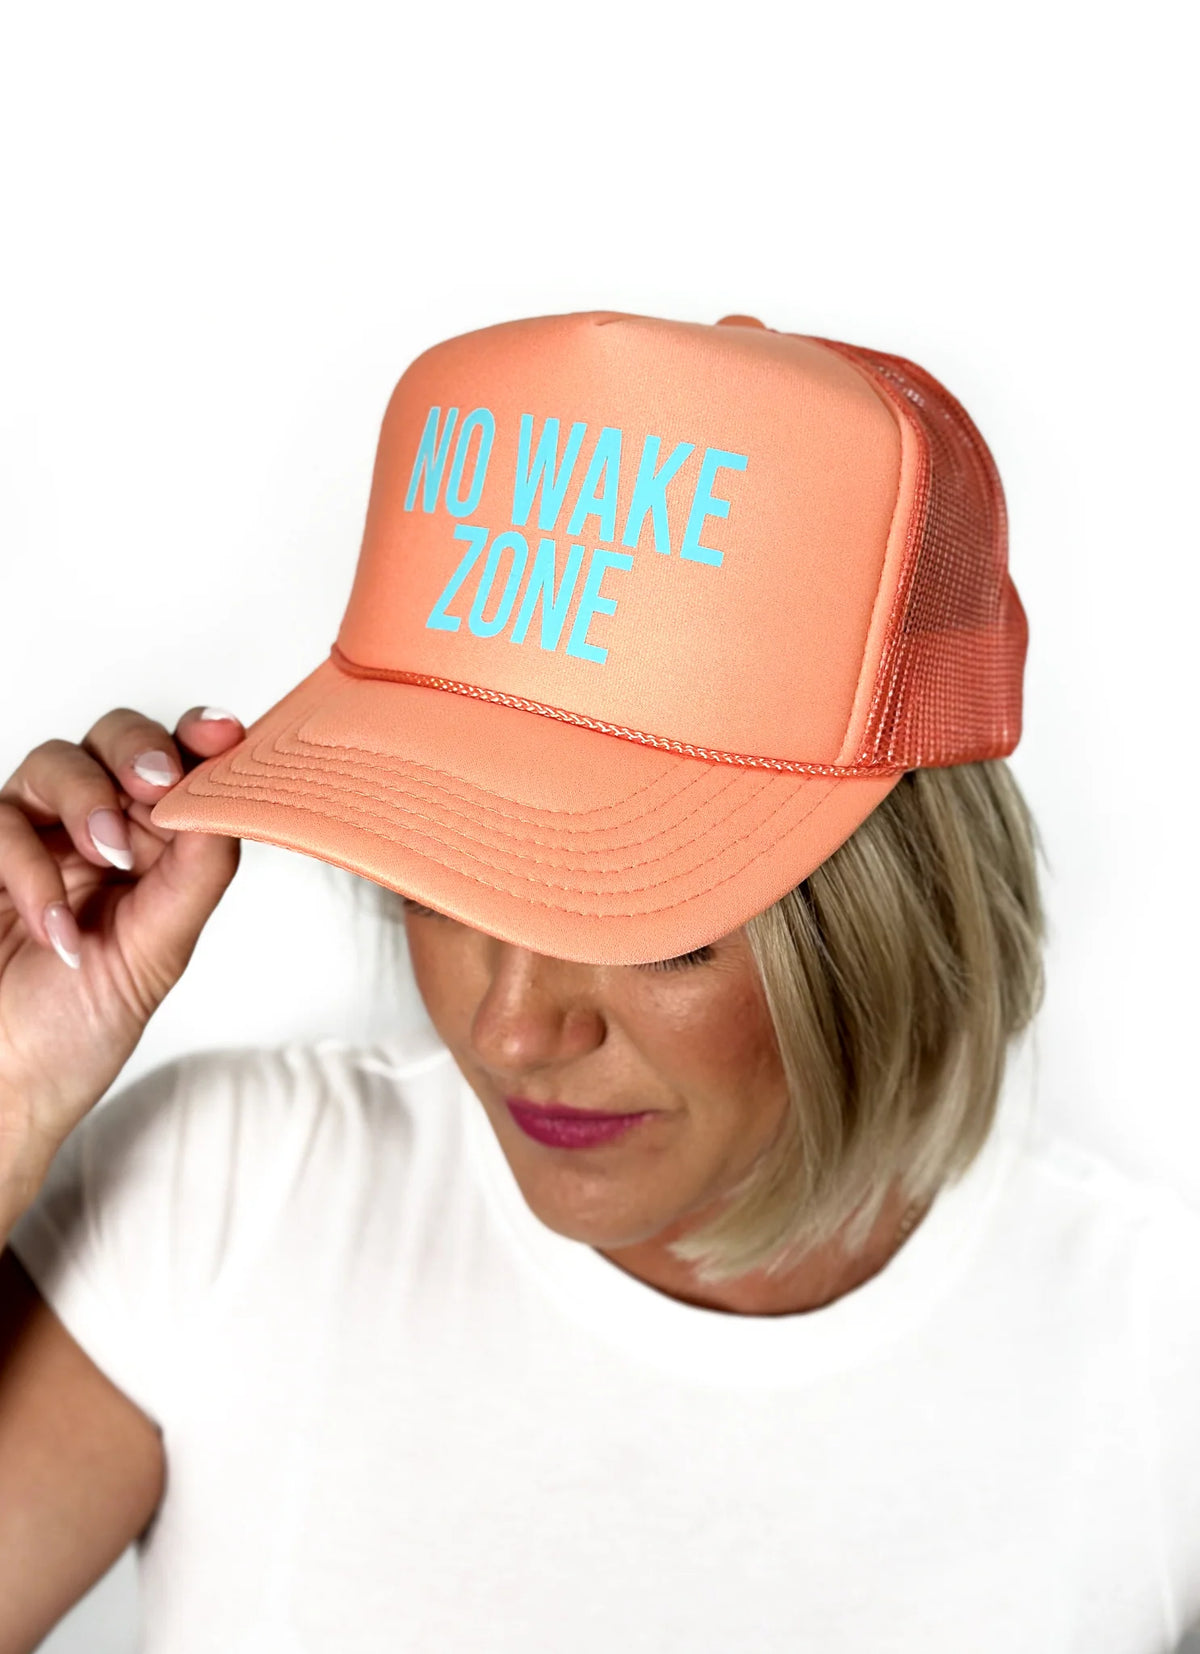 No Wake Zone Hat